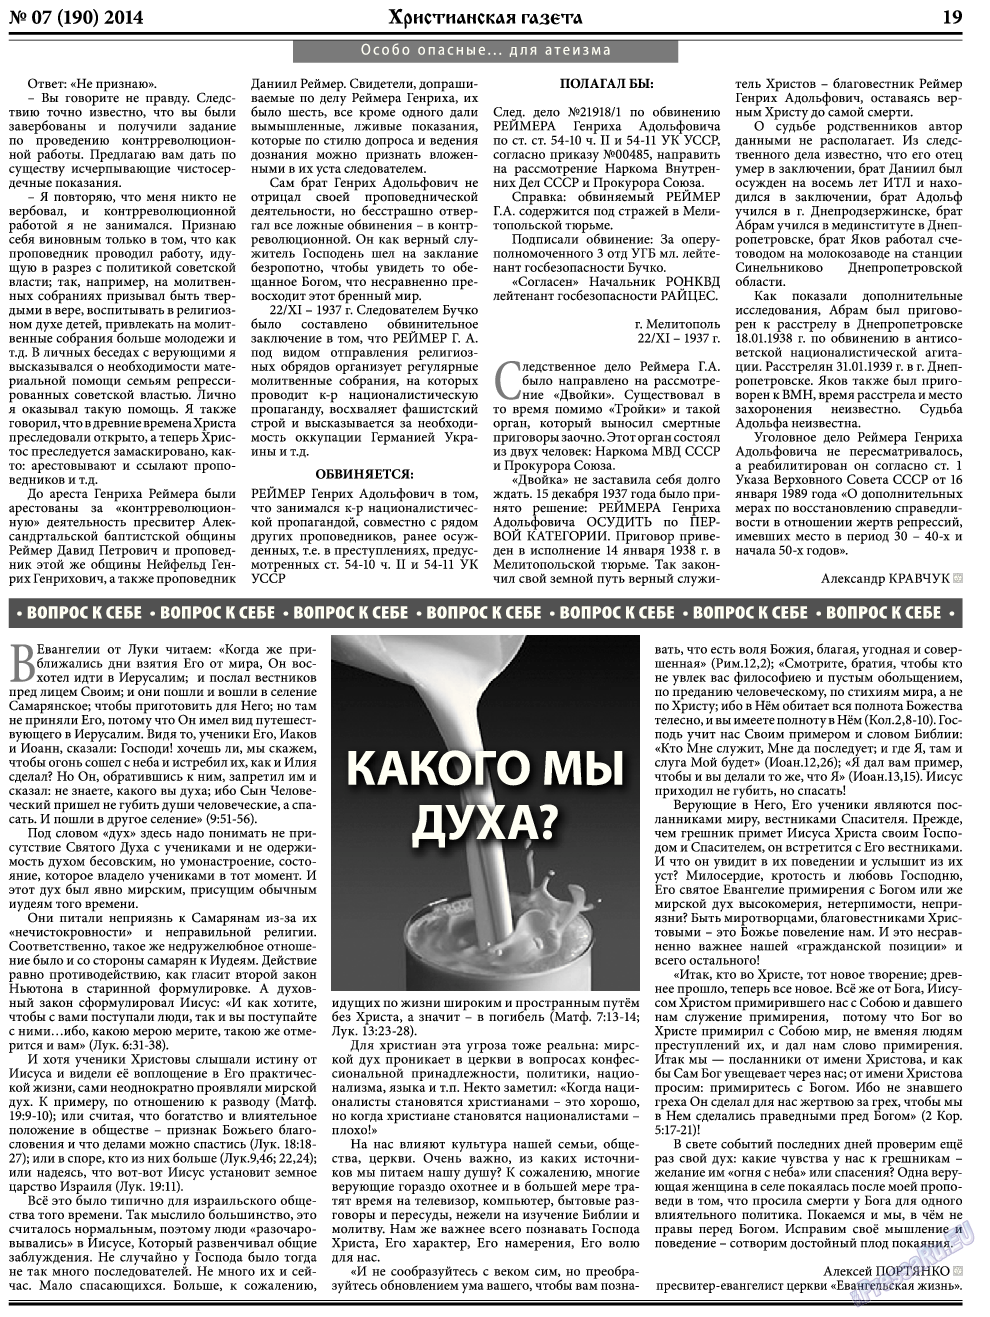 Христианская газета, газета. 2014 №7 стр.27